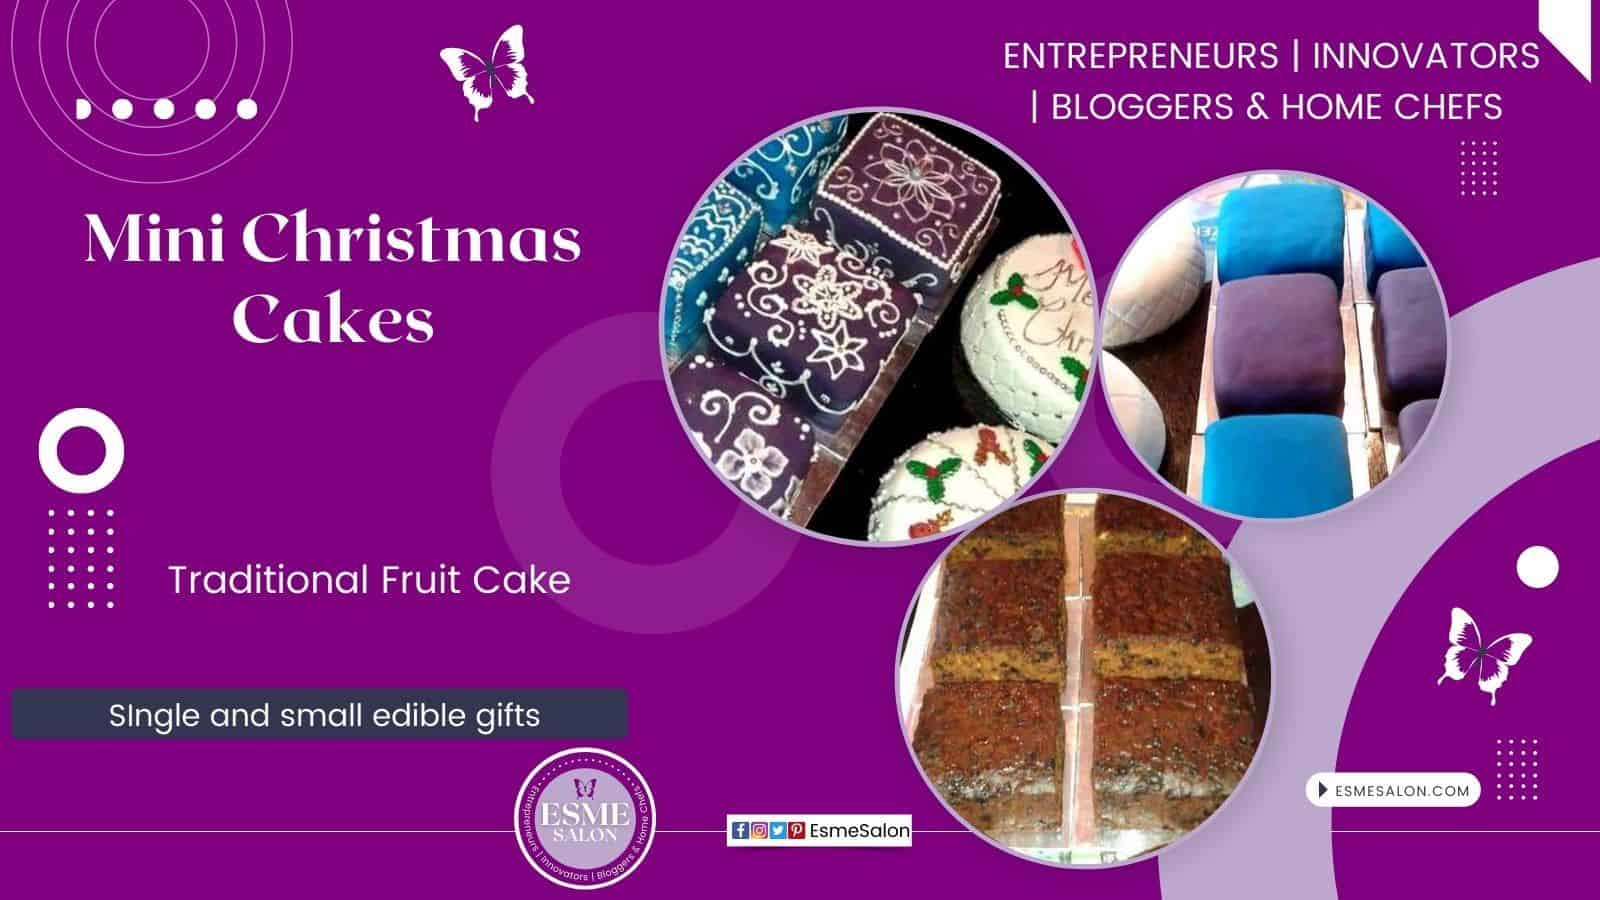 Mini Christmas Cakes, small edible and traditional fruit Christmas cakes